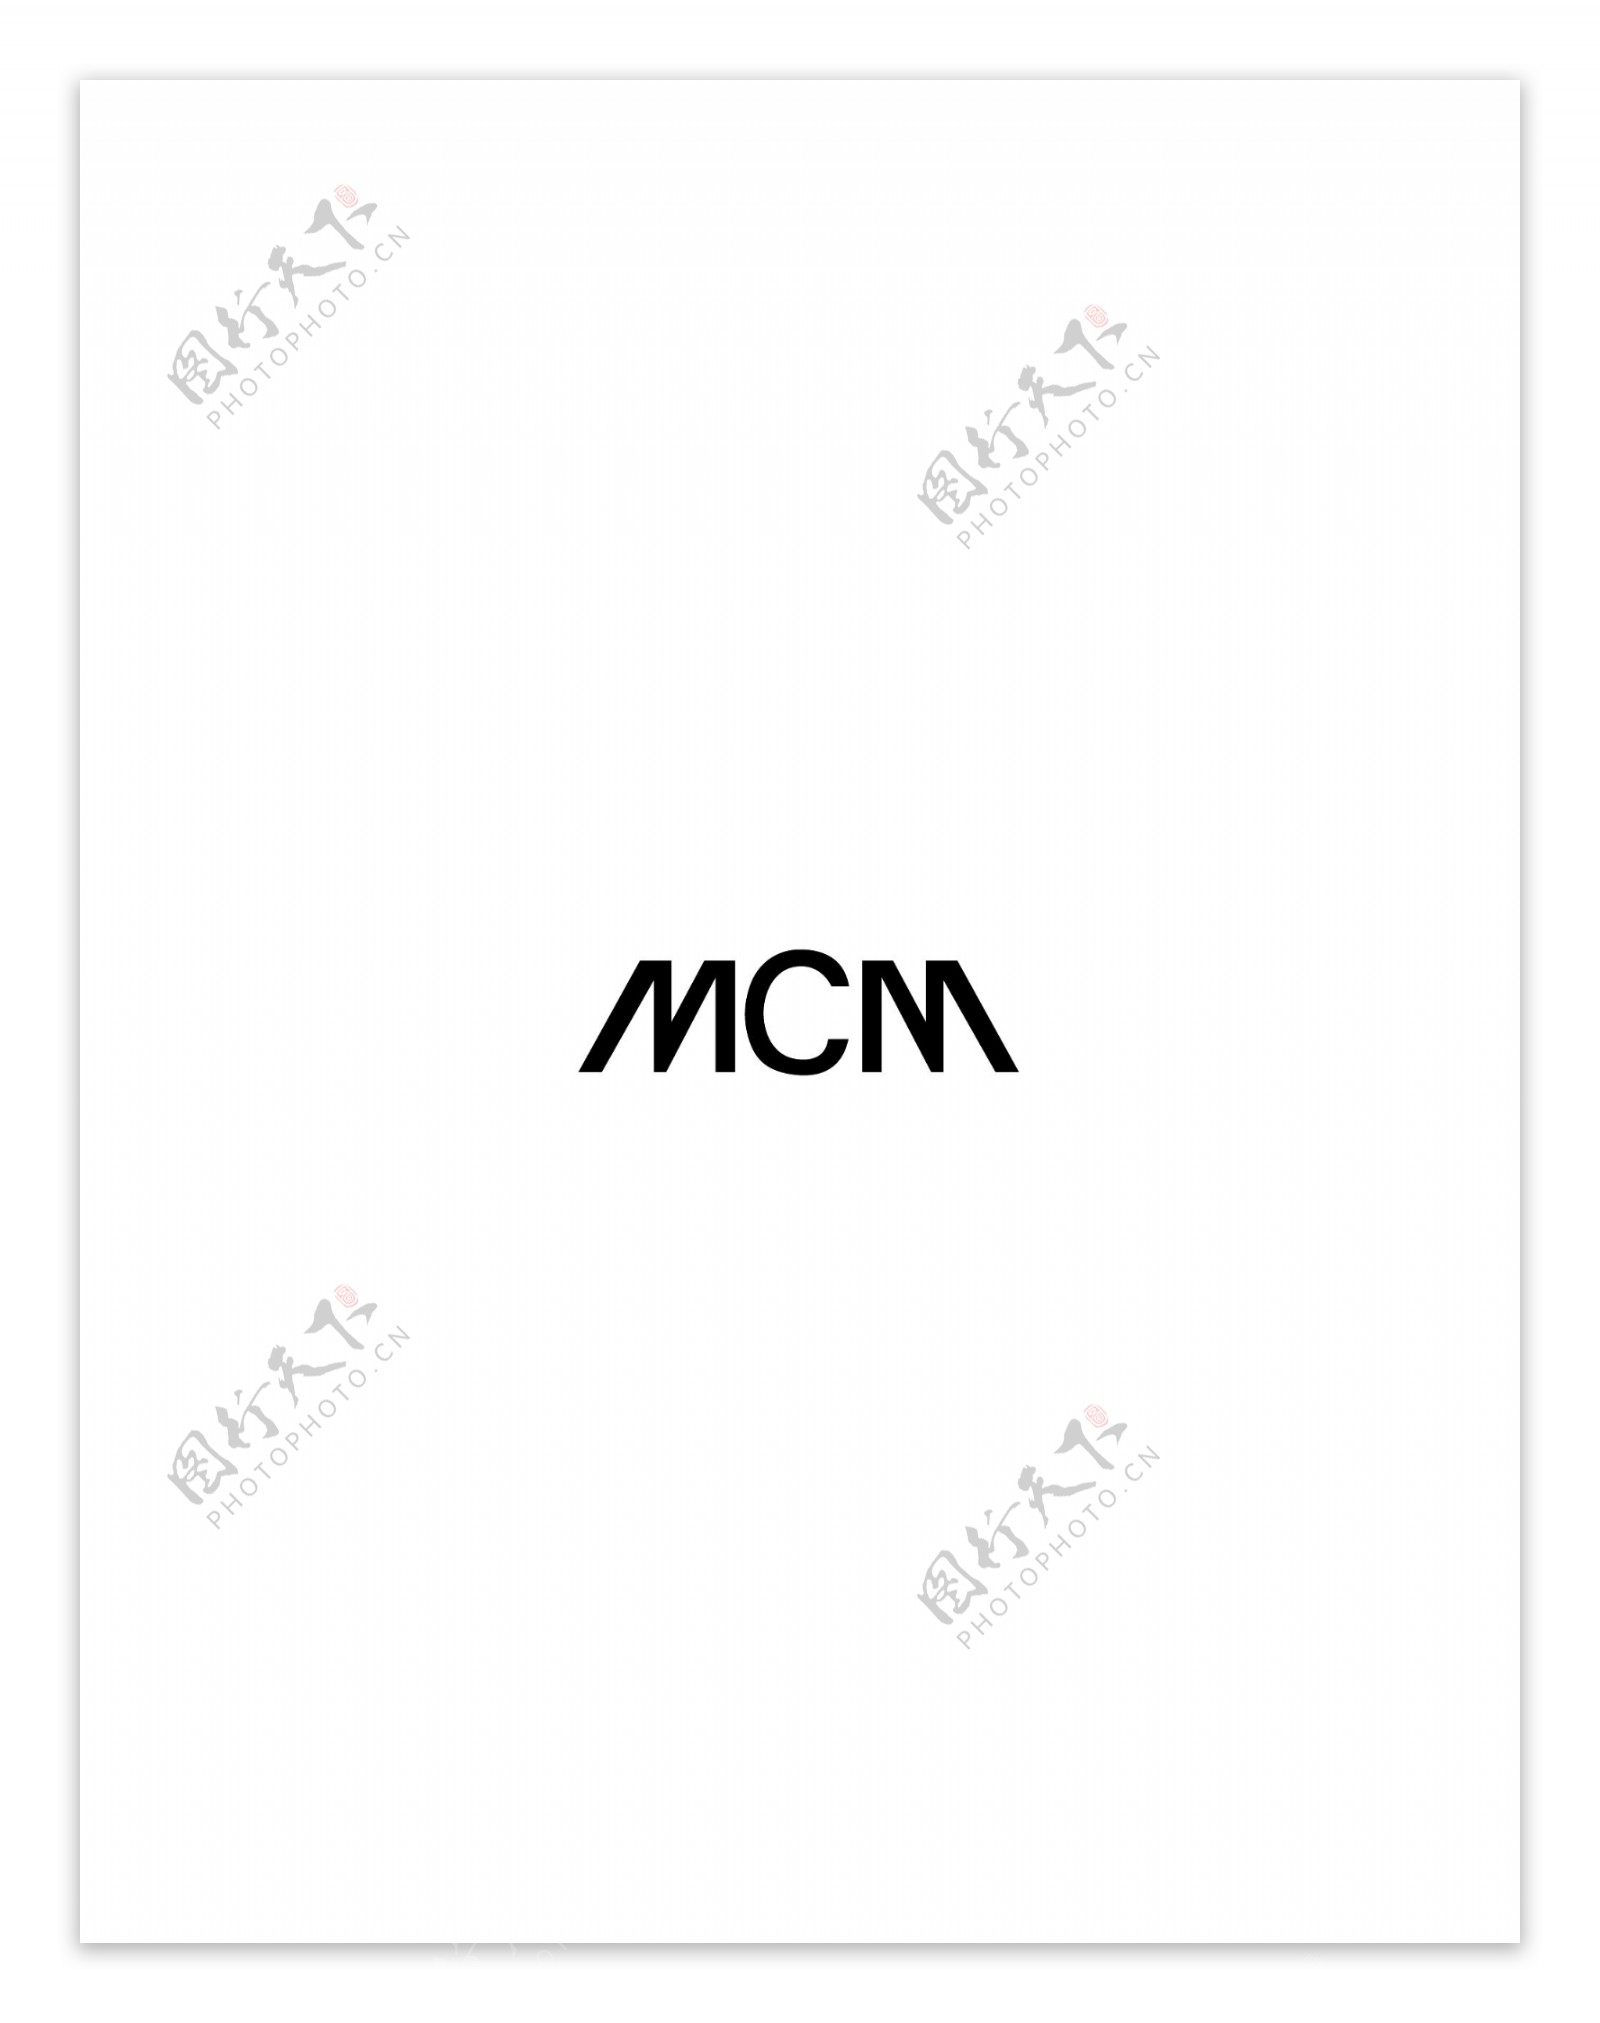 Mcmlogo设计欣赏软件和硬件公司标志Mcm下载标志设计欣赏